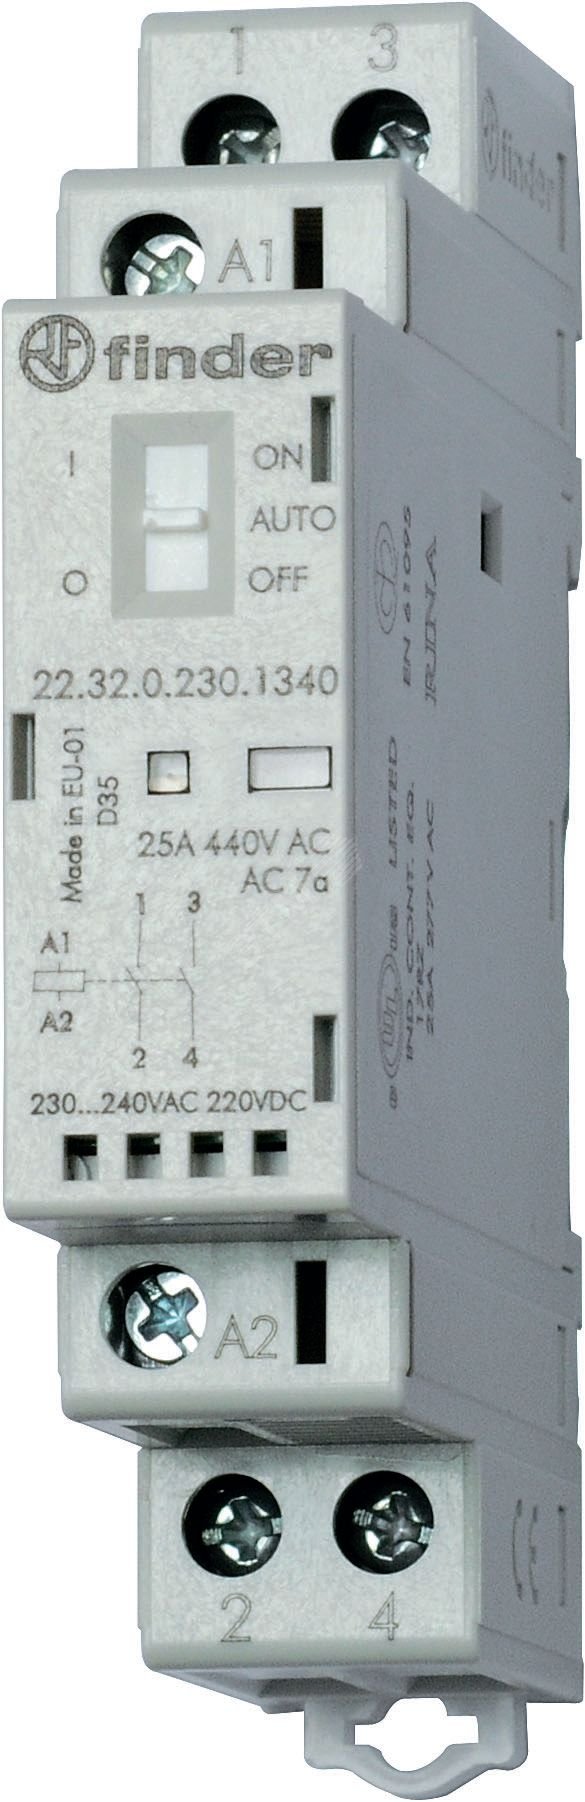 Модульные контакторы 25А, 2 NC, Переключатель Авто-Вкл-Выкл + Механический индикатор + Светодиод 22.32.0.230.1440 FINDER - превью 2